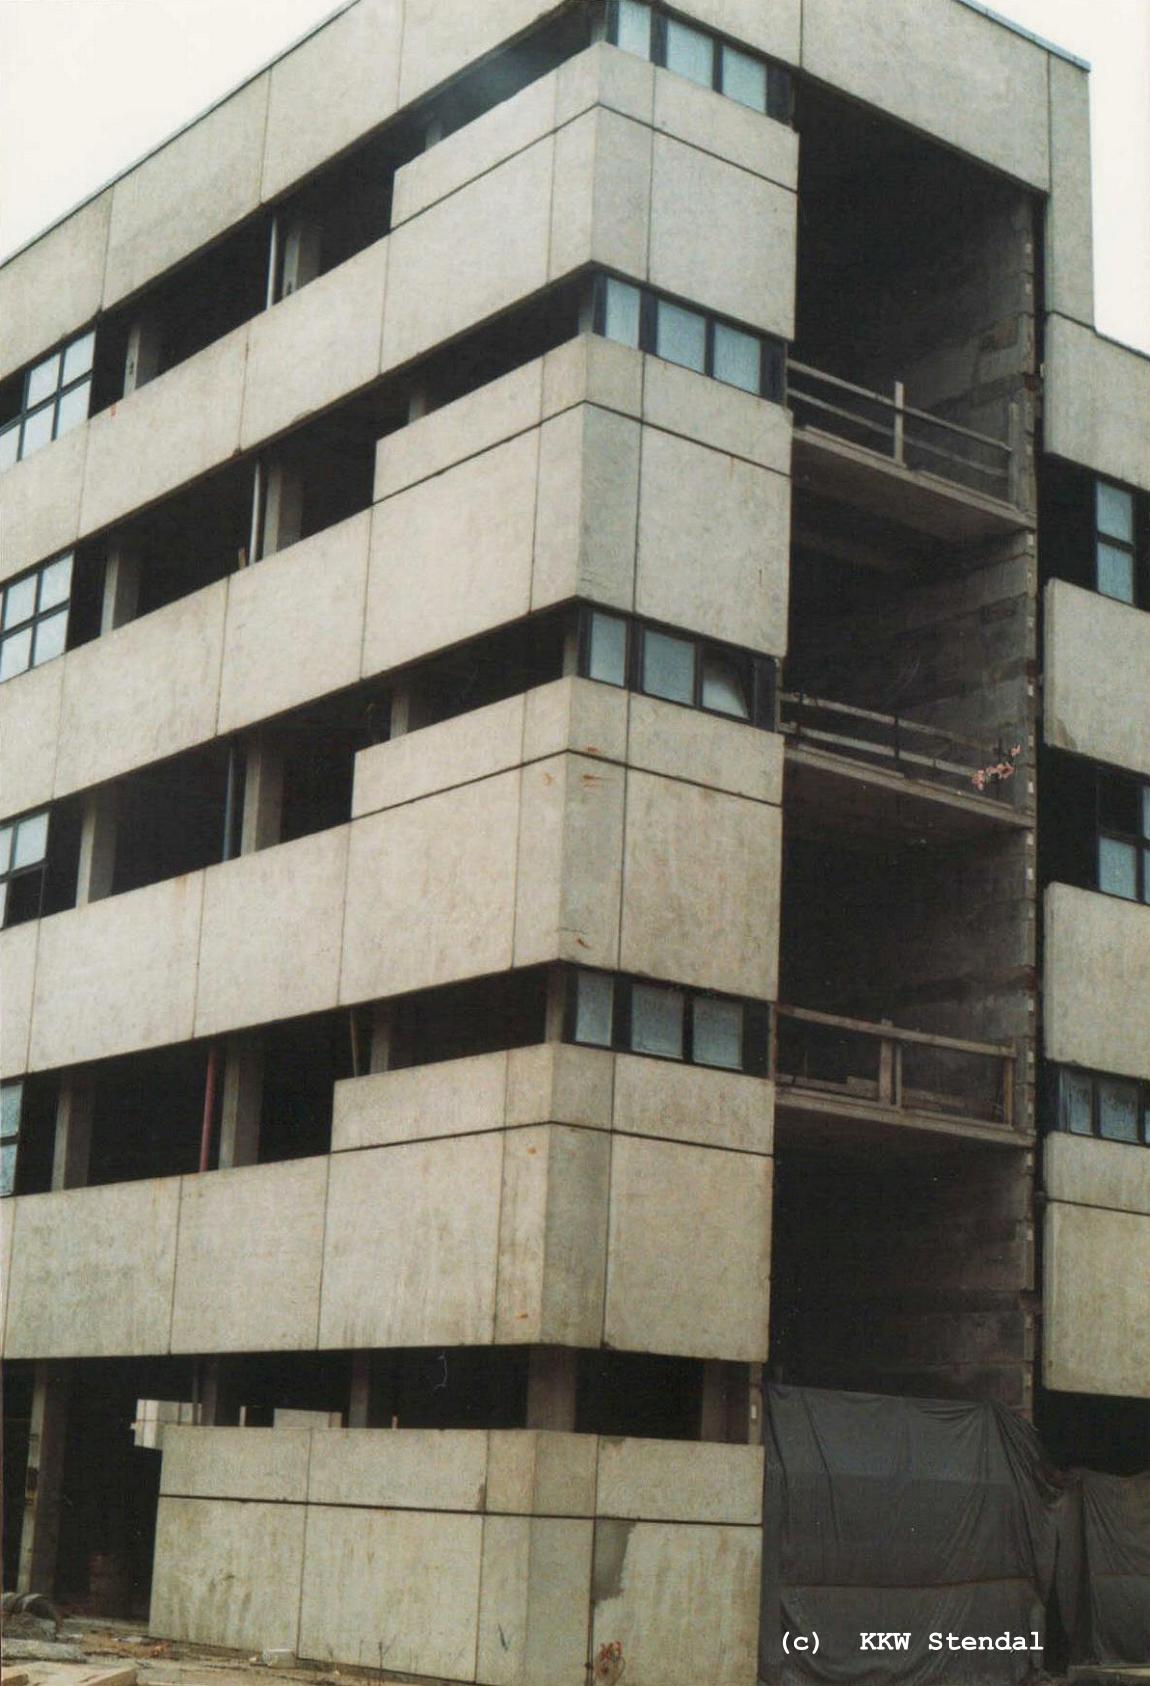  KKW Stendal, Baustelle 1990, SLG Sanitär- und Laborgebäude, Treppenhaus im
 Südbereich 